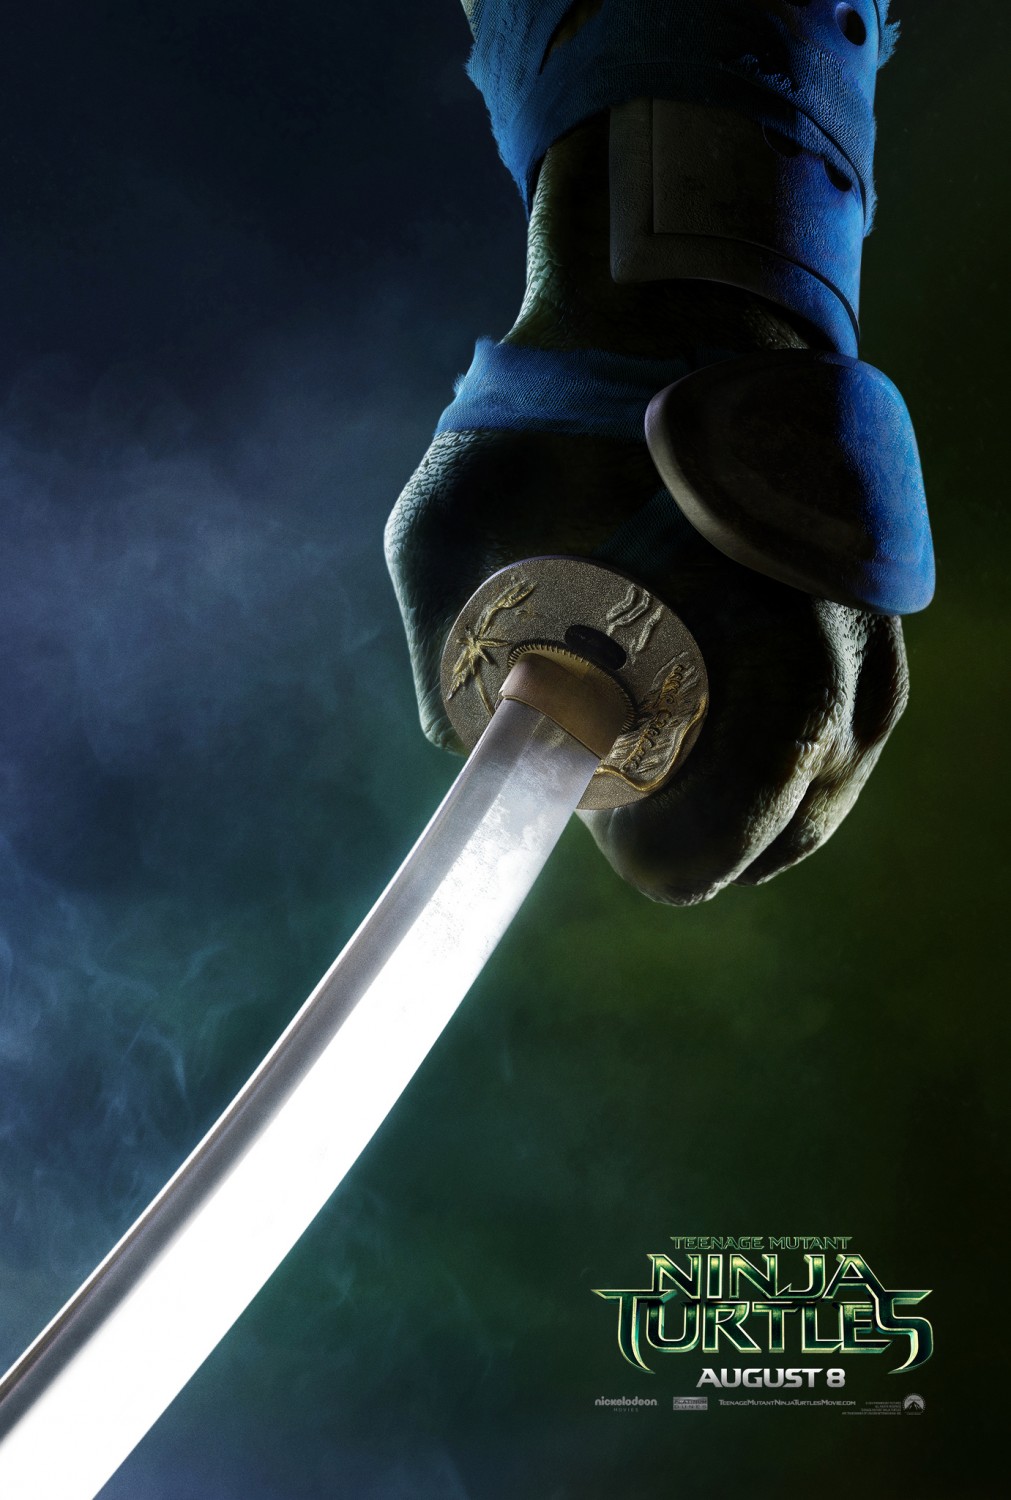 Extra Large Movie Poster Image for Teenage Mutant Ninja Turtles (#4 of 22)